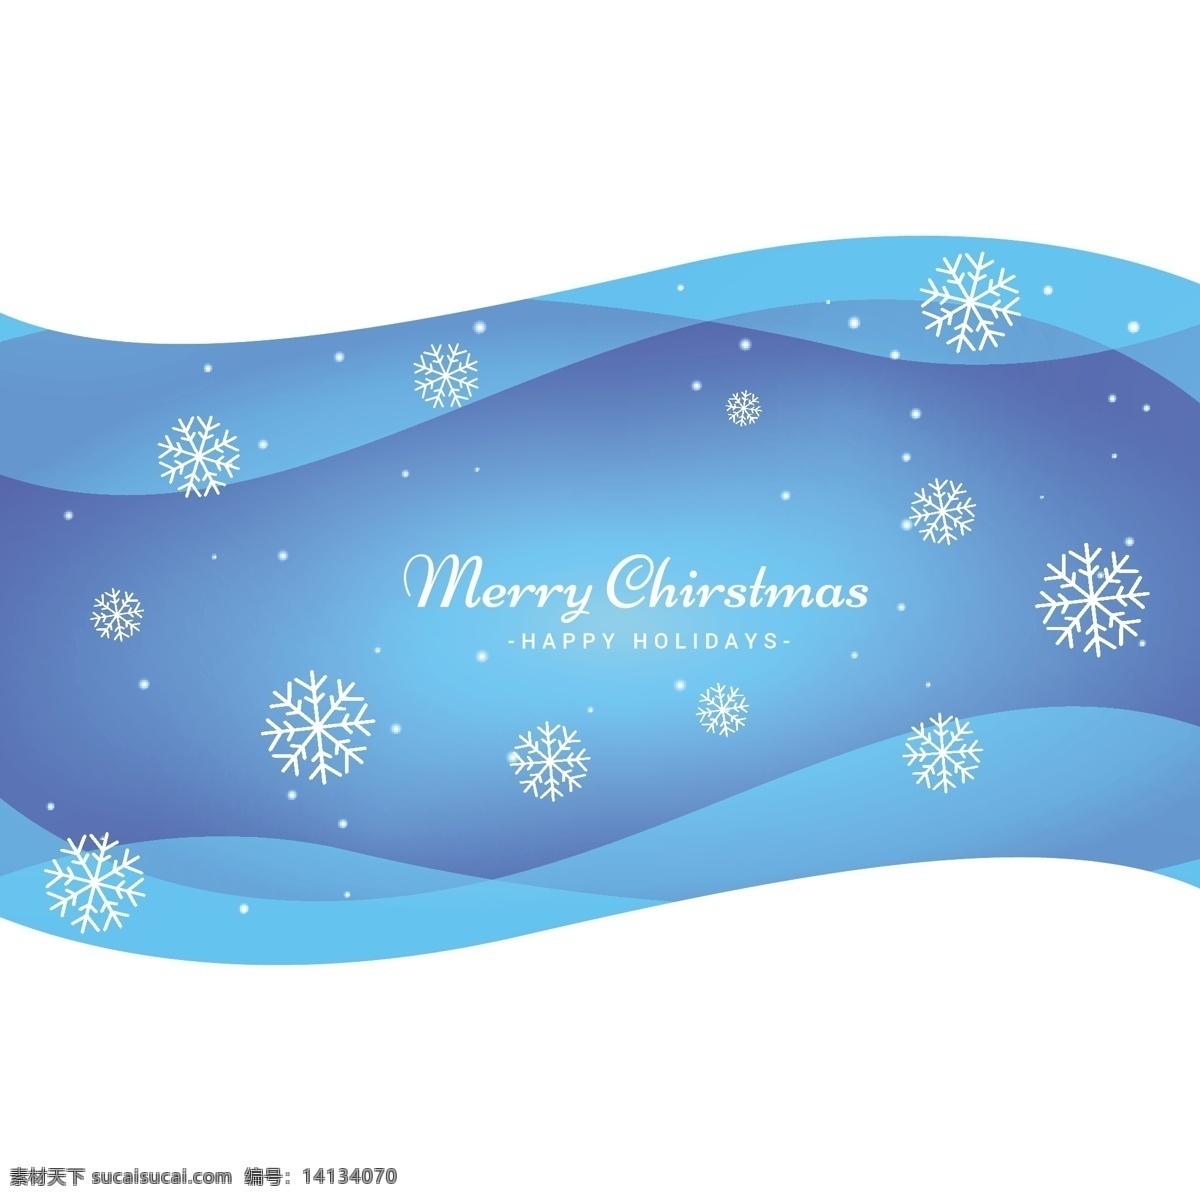 背景 圣诞节 蓝色的背景 圣诞快乐 冬天 蓝色的 快乐的 波 圣诞背景 庆祝的节日 节日快乐 冬天的背景下 浪潮的背景下 波浪 季节 节日 十二月 白色